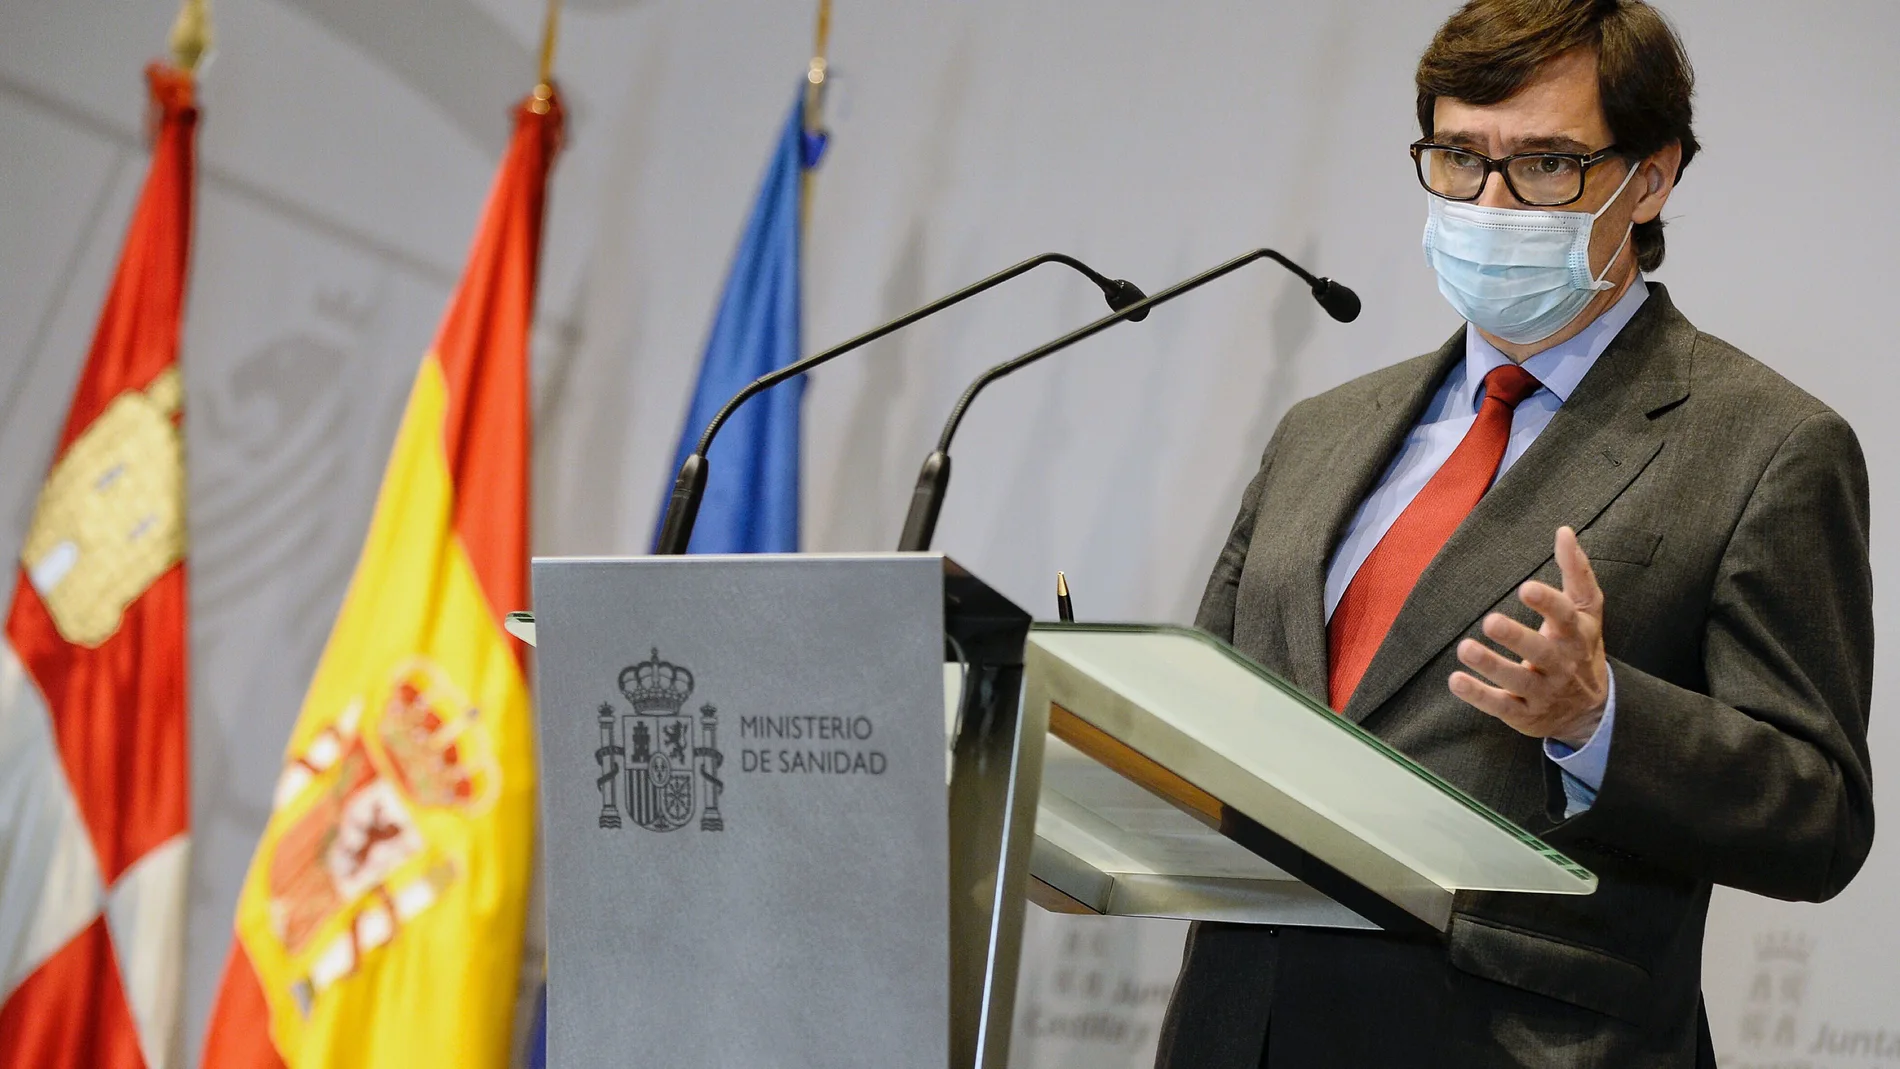 El ministro de Sanidad, Salvador Illa, da una rueda de prensa conjunta con presidente de la Junta de Castilla y León, Alfonso Fernández